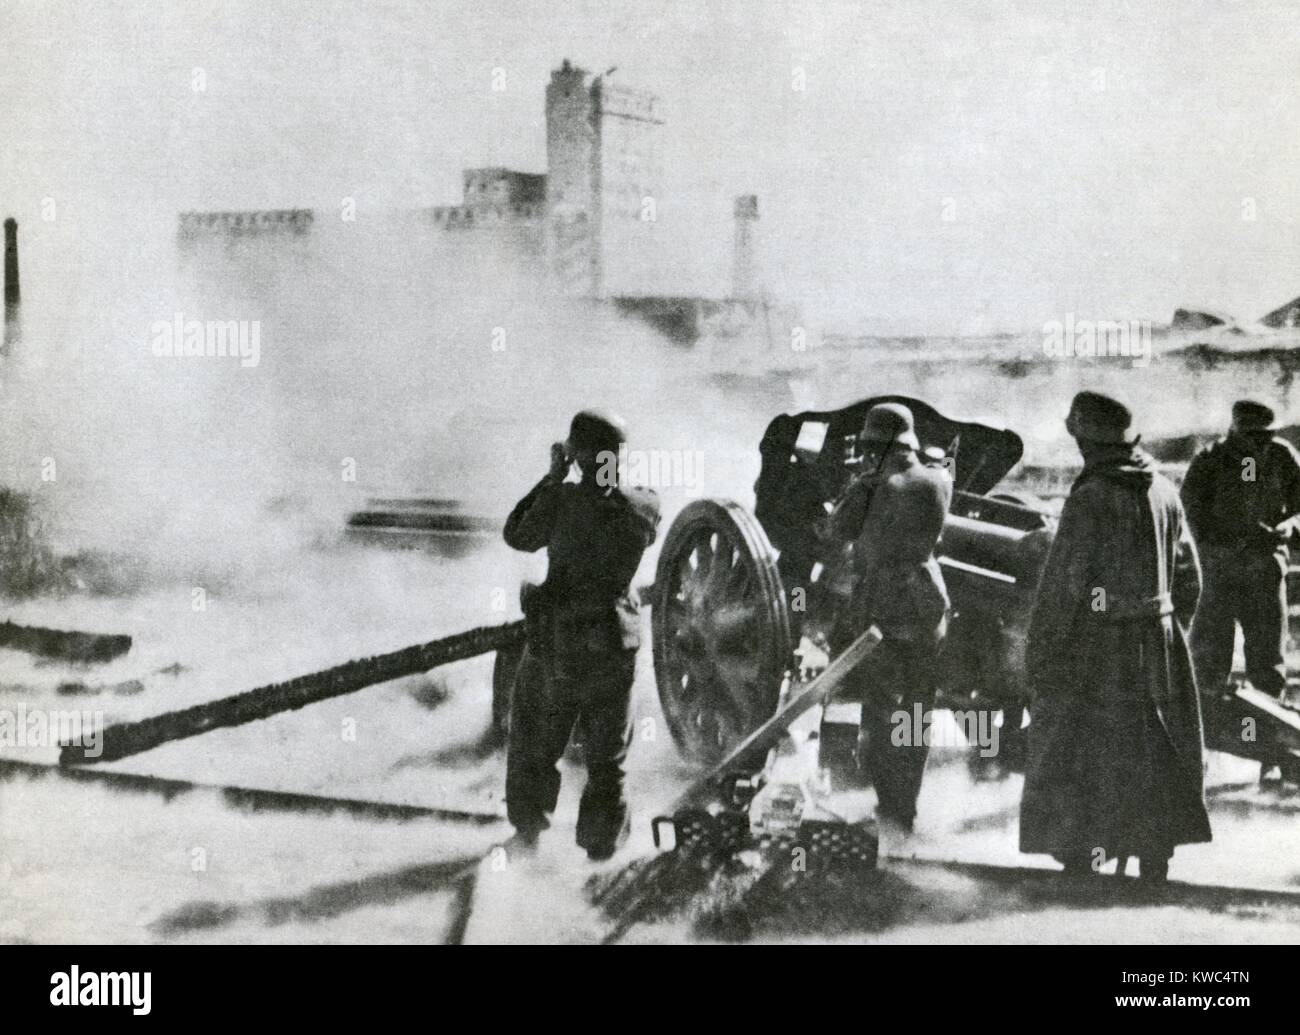 L'artillerie allemande à Stalingrad en 1942. L'Armée rouge contre-attaqué avec l'opération "Uranus", en novembre 1942, finalement autour de la 6e armée nazie qui capitule le 2 février 1943. (BSLOC   2015 13 109) Banque D'Images